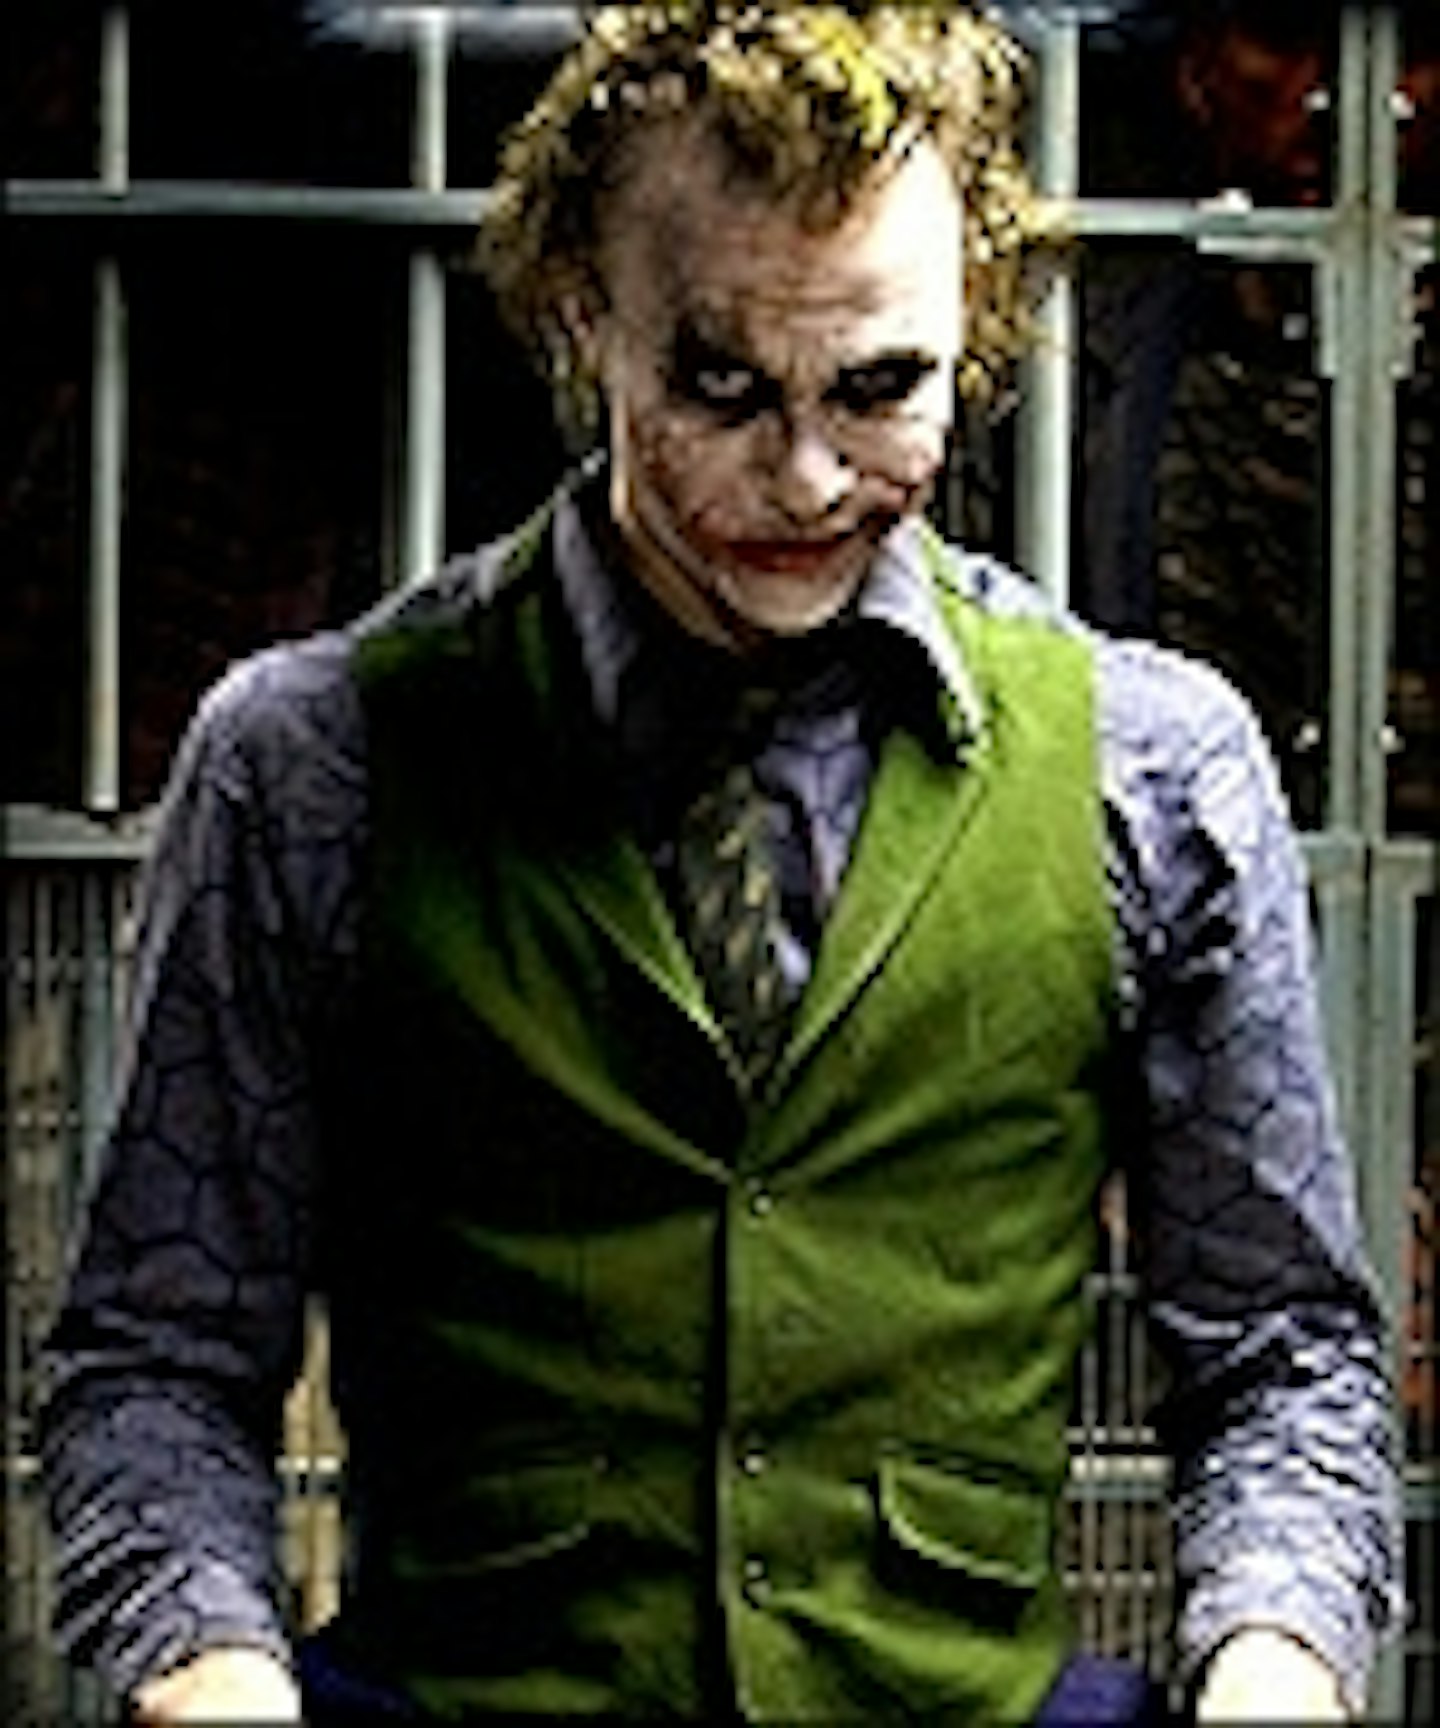 World Exclusive: The Joker Speaks